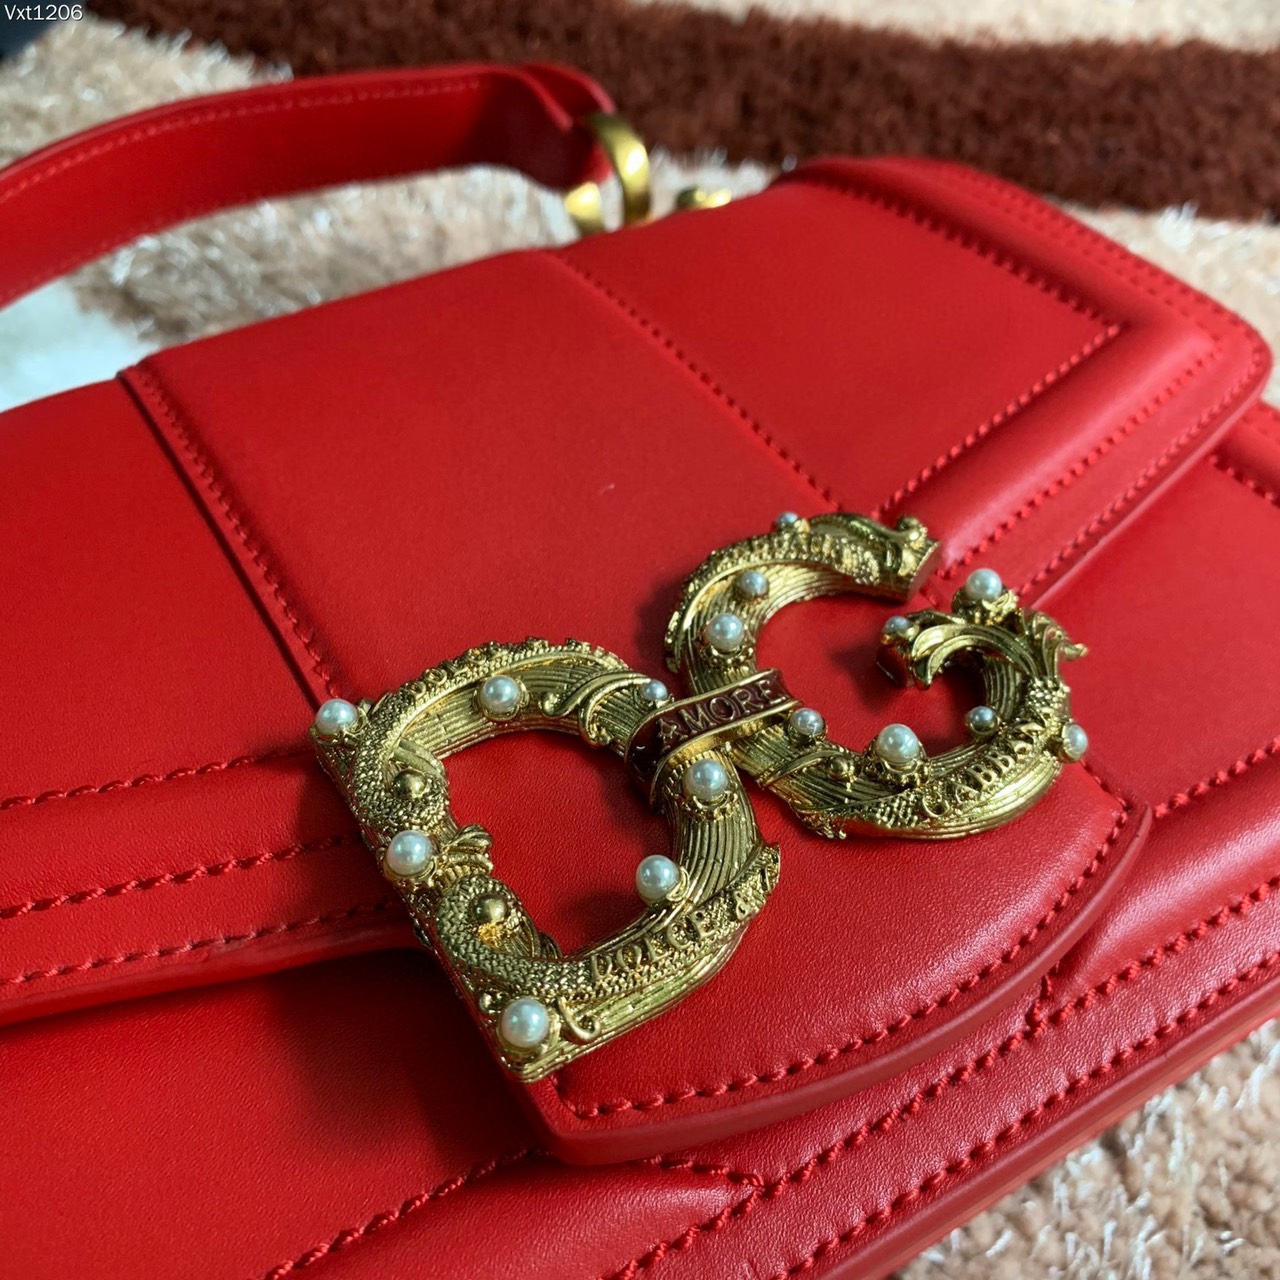 Túi Xách Dolce & Gabbana Amore Màu Đỏ size 27cm